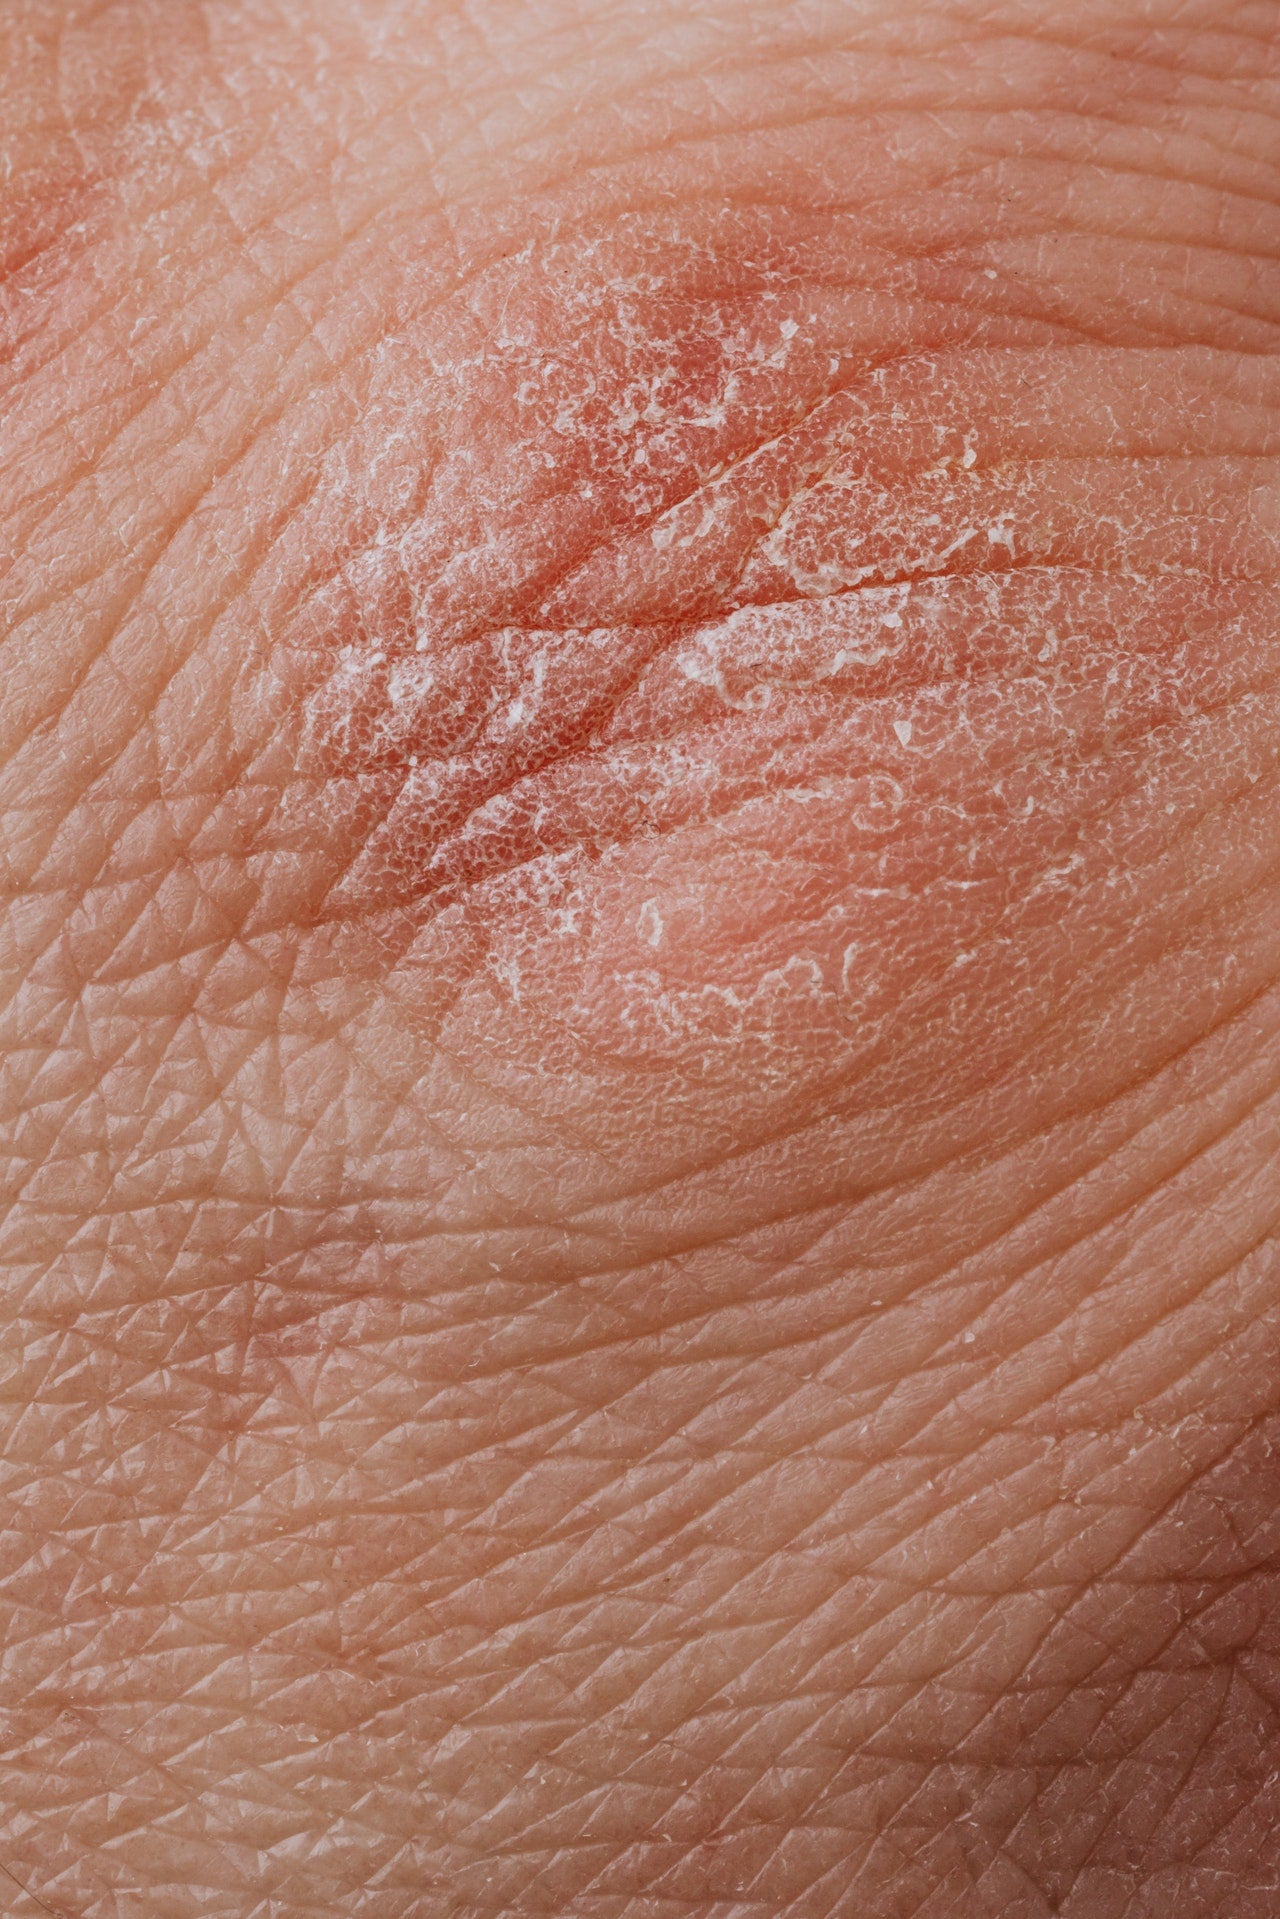 Dry Irritated Skin